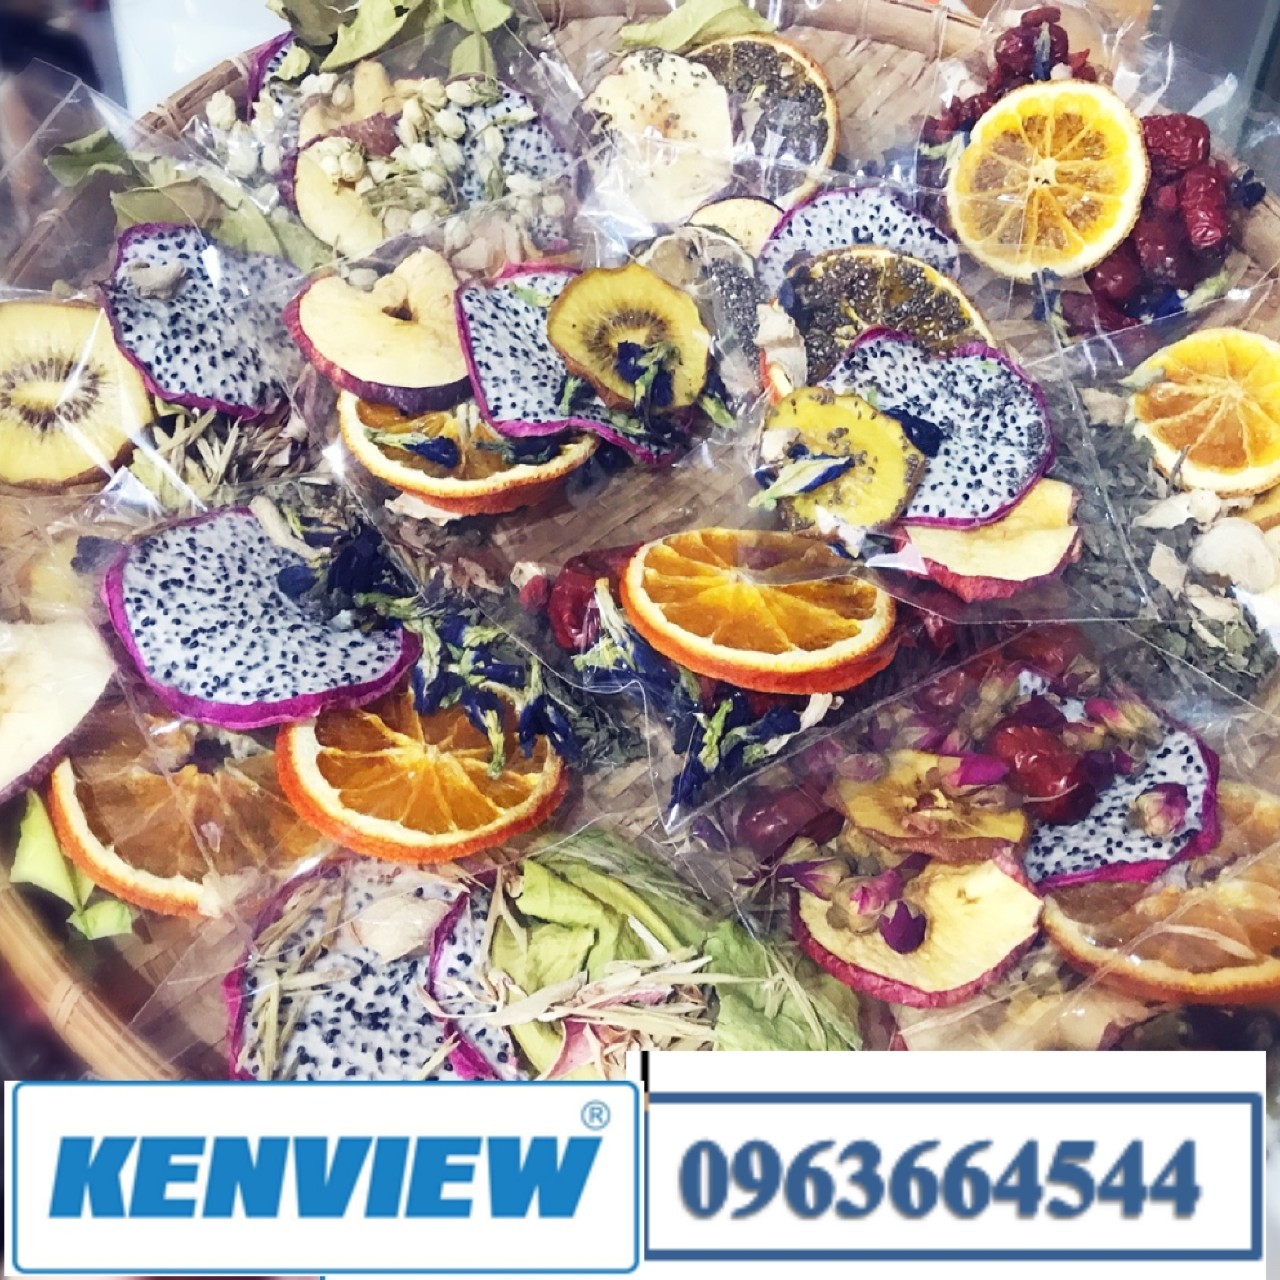 Kenview cung cấp máy sấy hoa quả công nghiệp ở Bình Tân